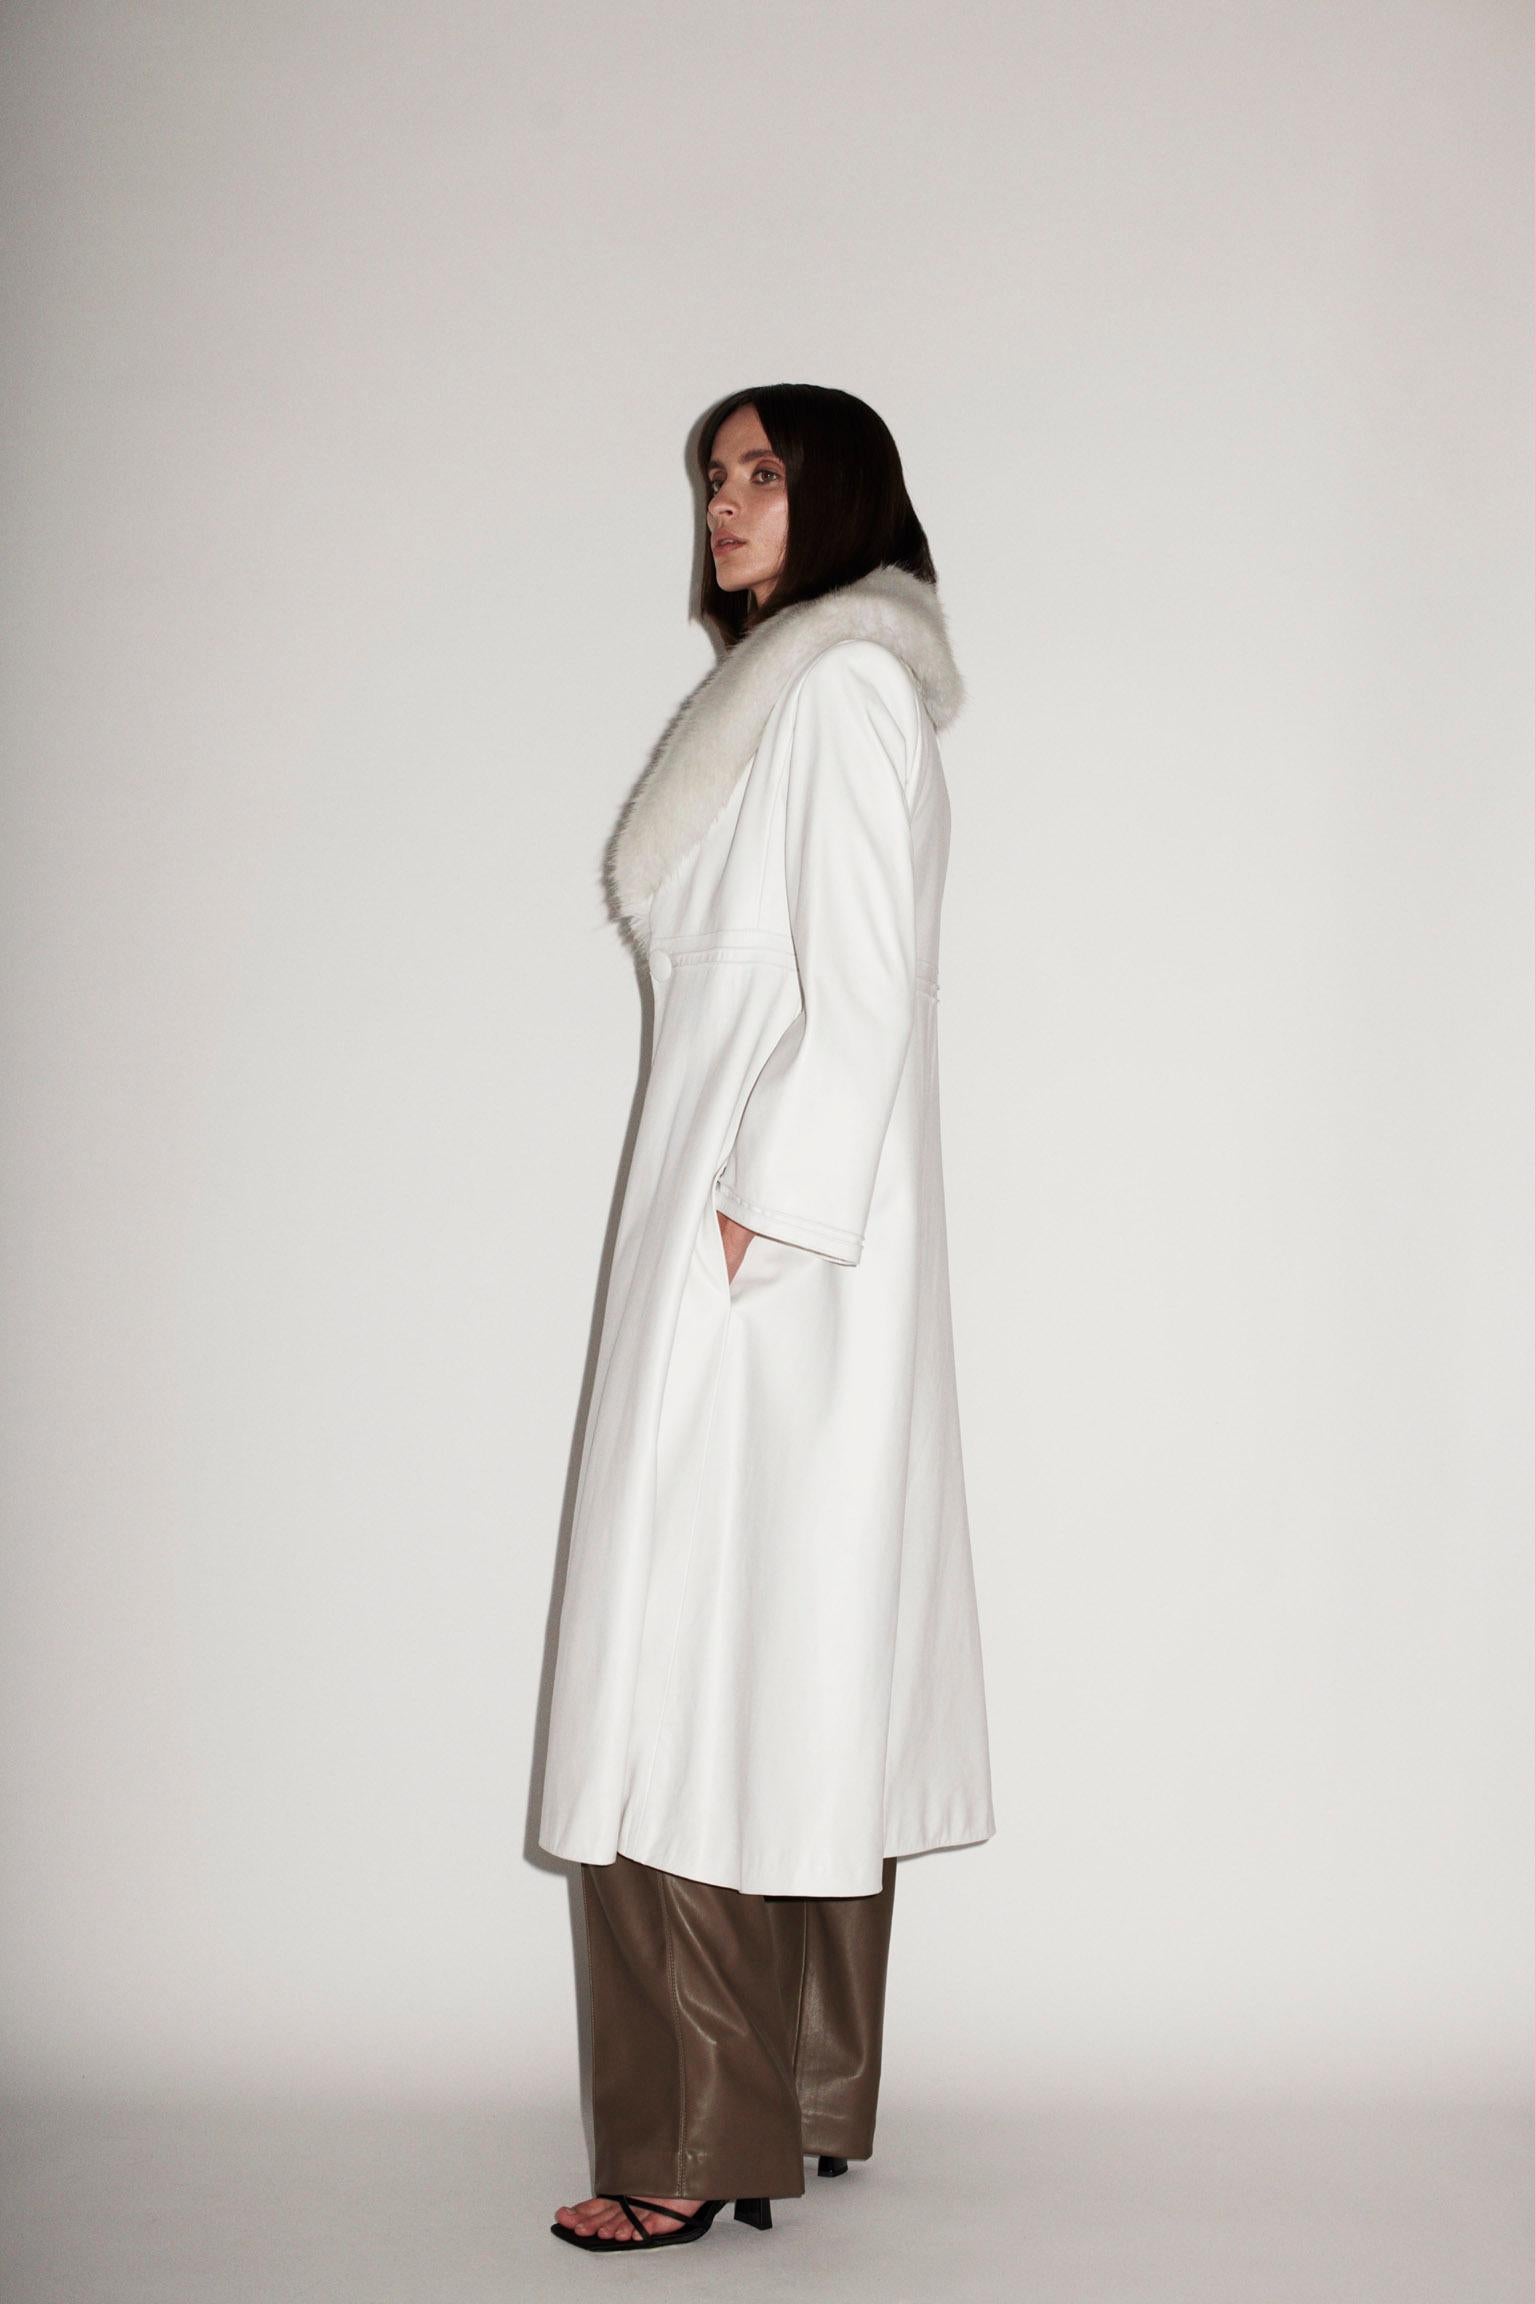 Women's Verheyen London Edward Leather Coat in White with Faux Fur - Size uk 12  For Sale